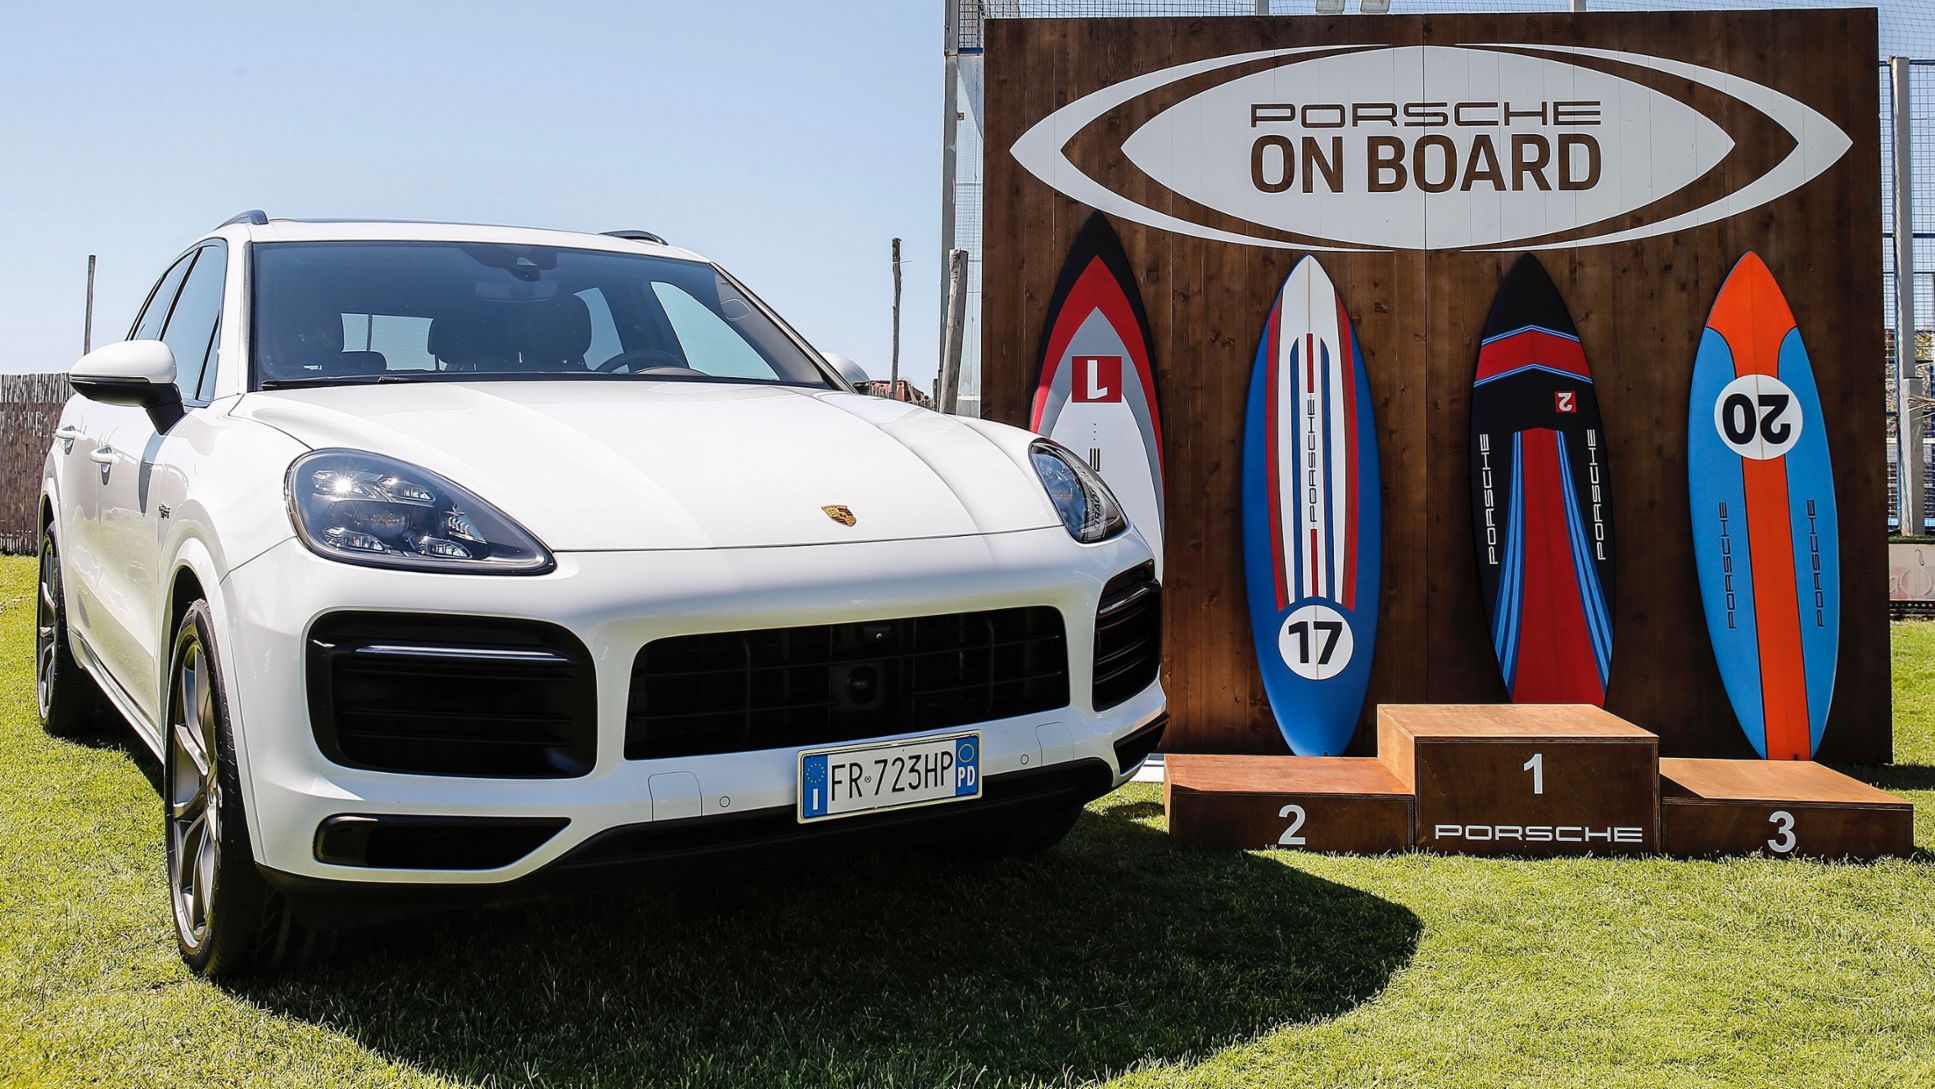 Cayenne, Wassersport-Initiative Porsche On Board, Italien, 2019, Porsche AG